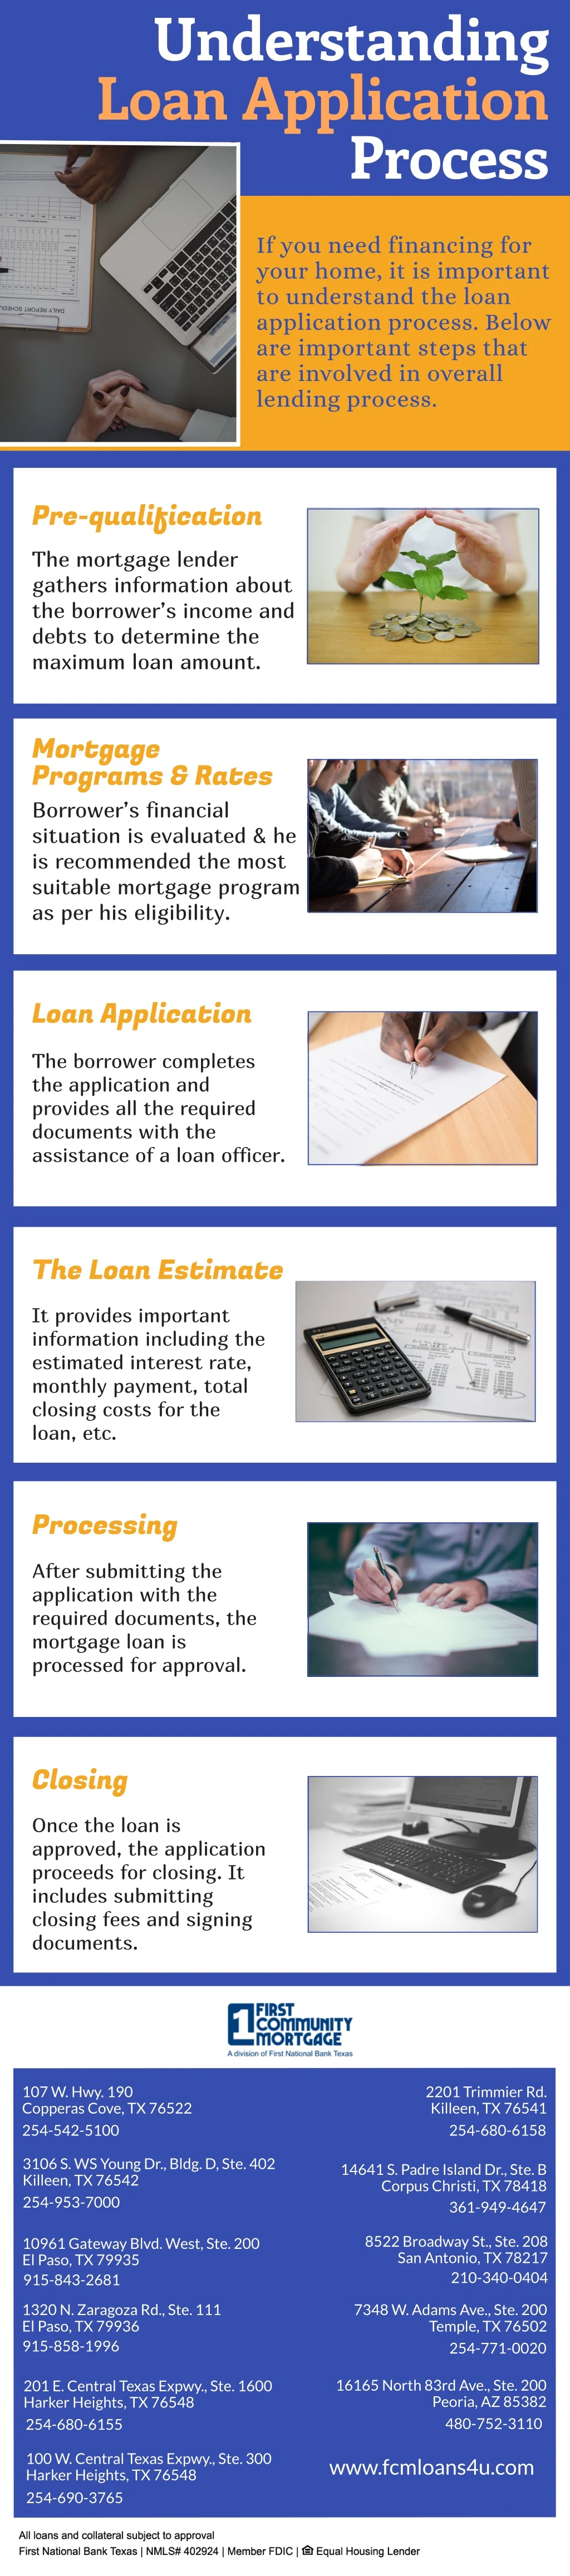 understanding loan application